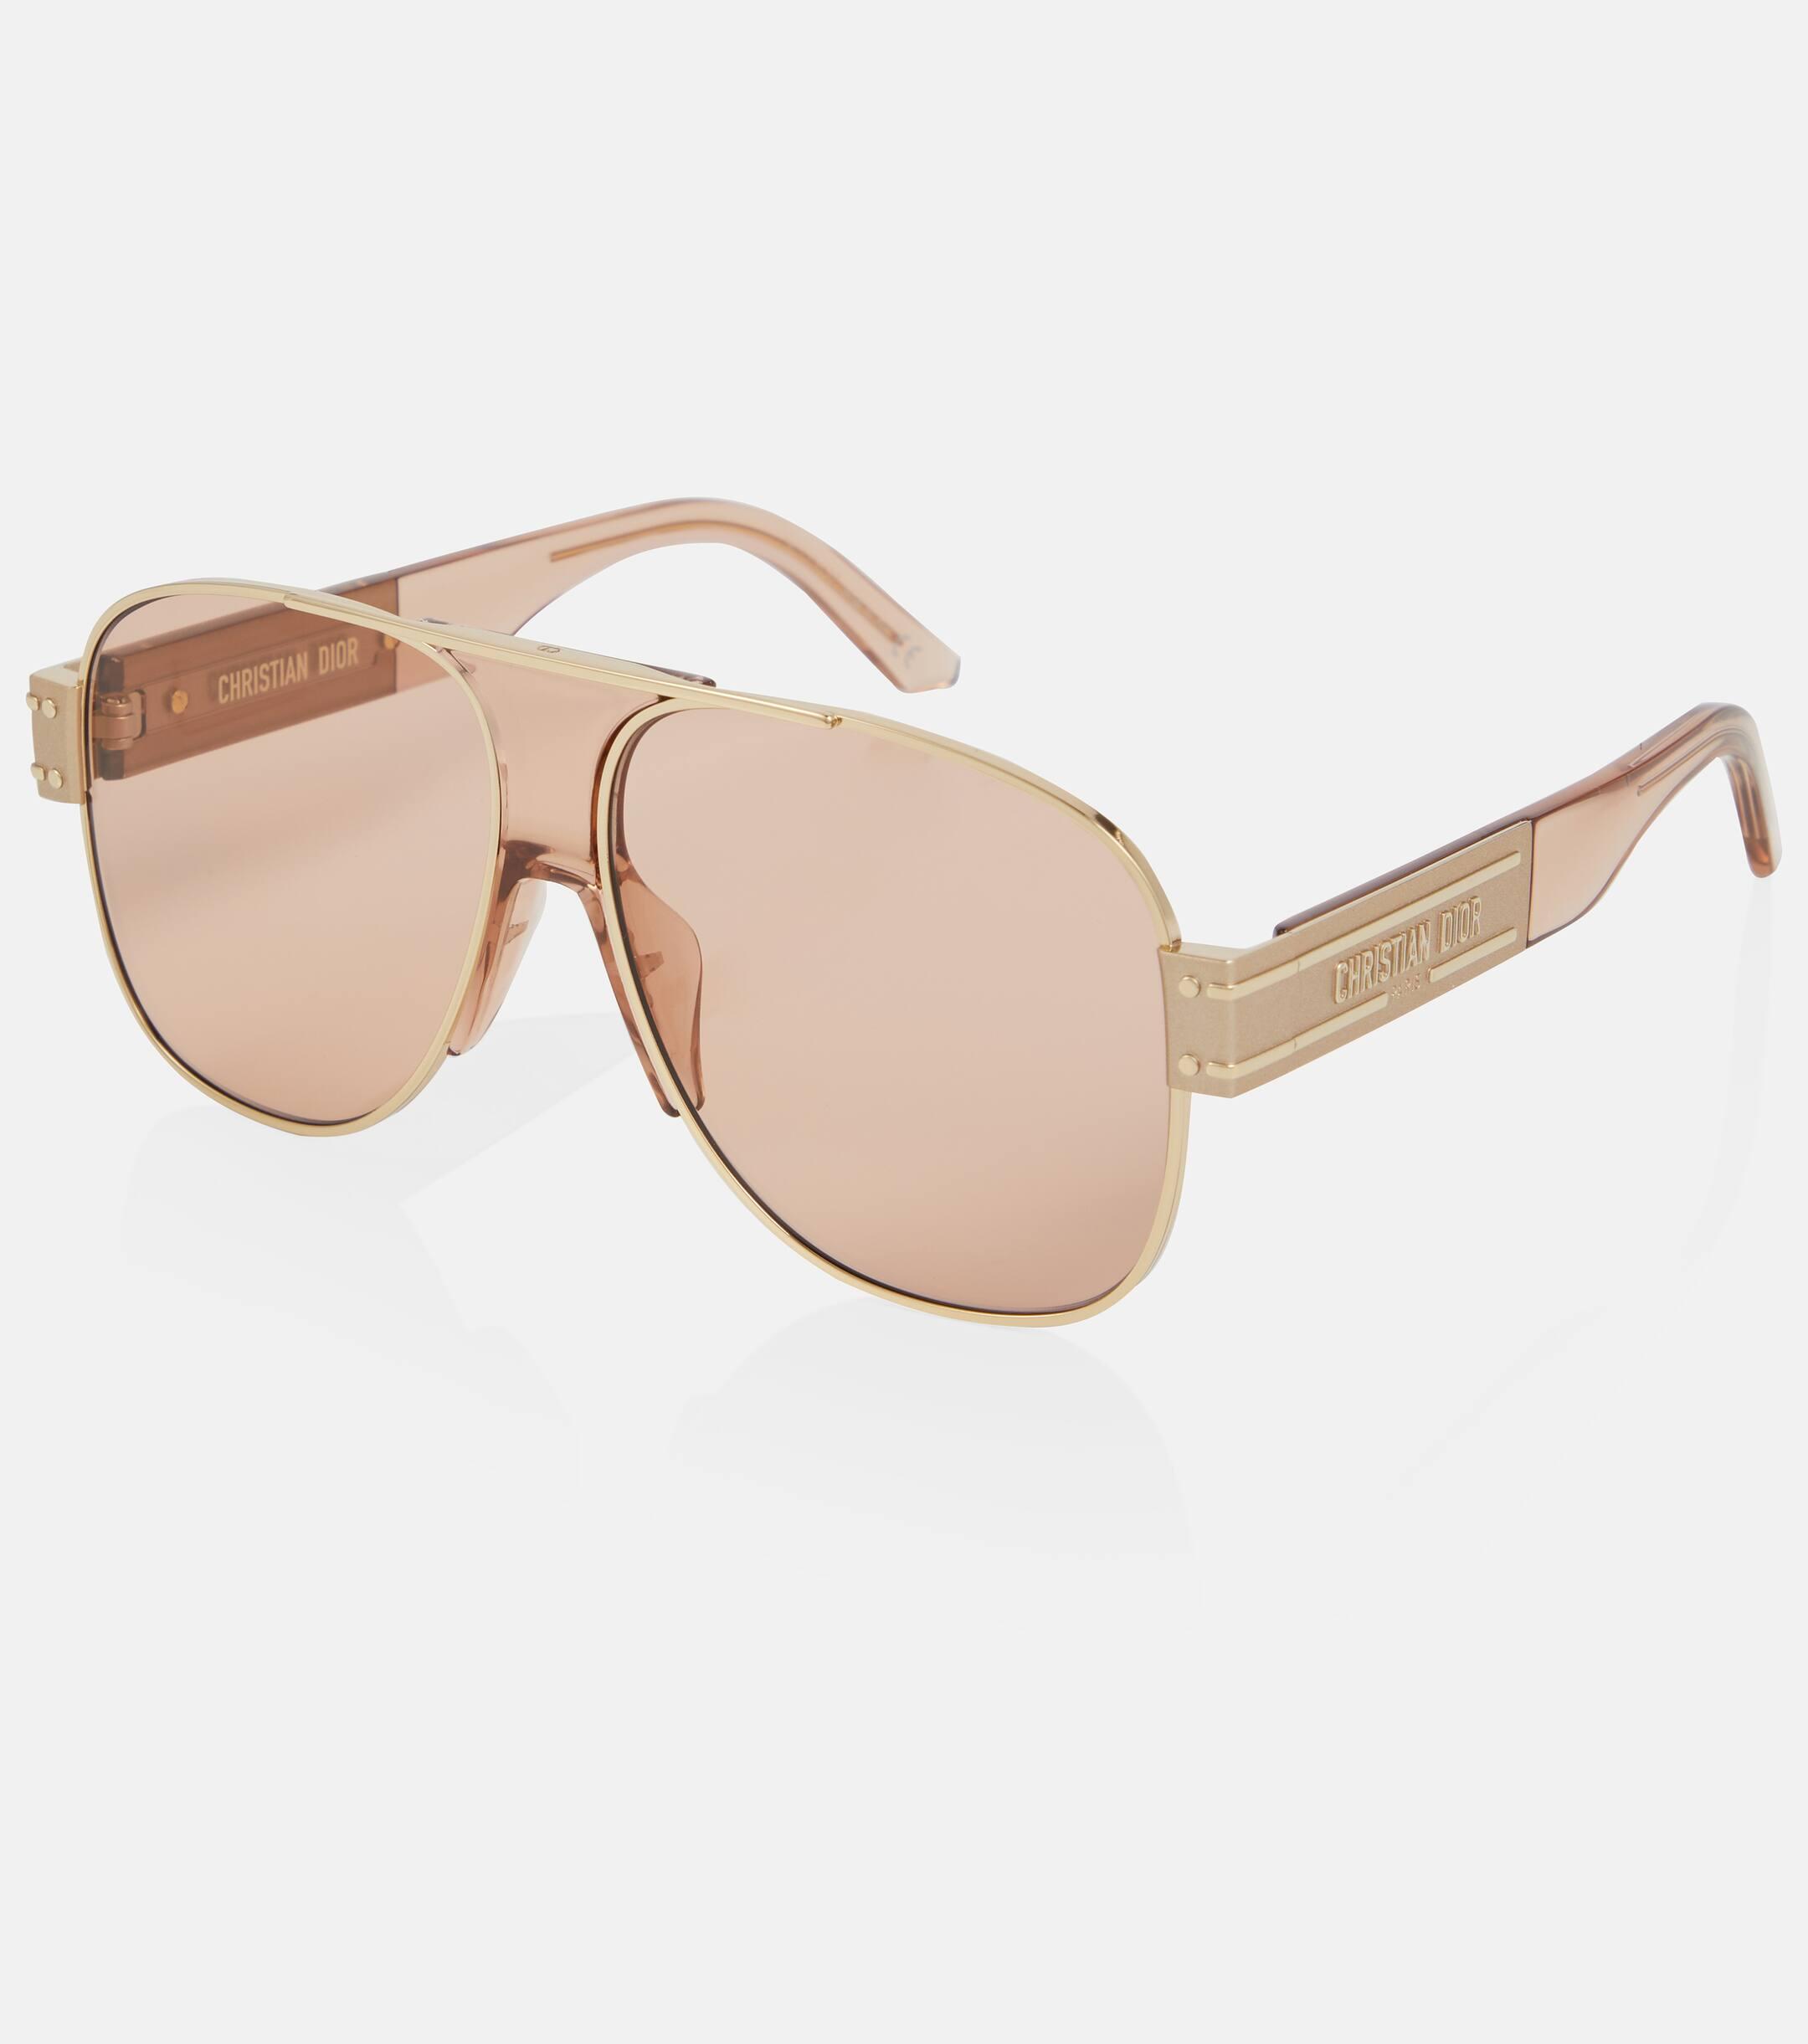 Dior Diorsignature A3u Aviator Sunglasses in Pink | Lyst UK